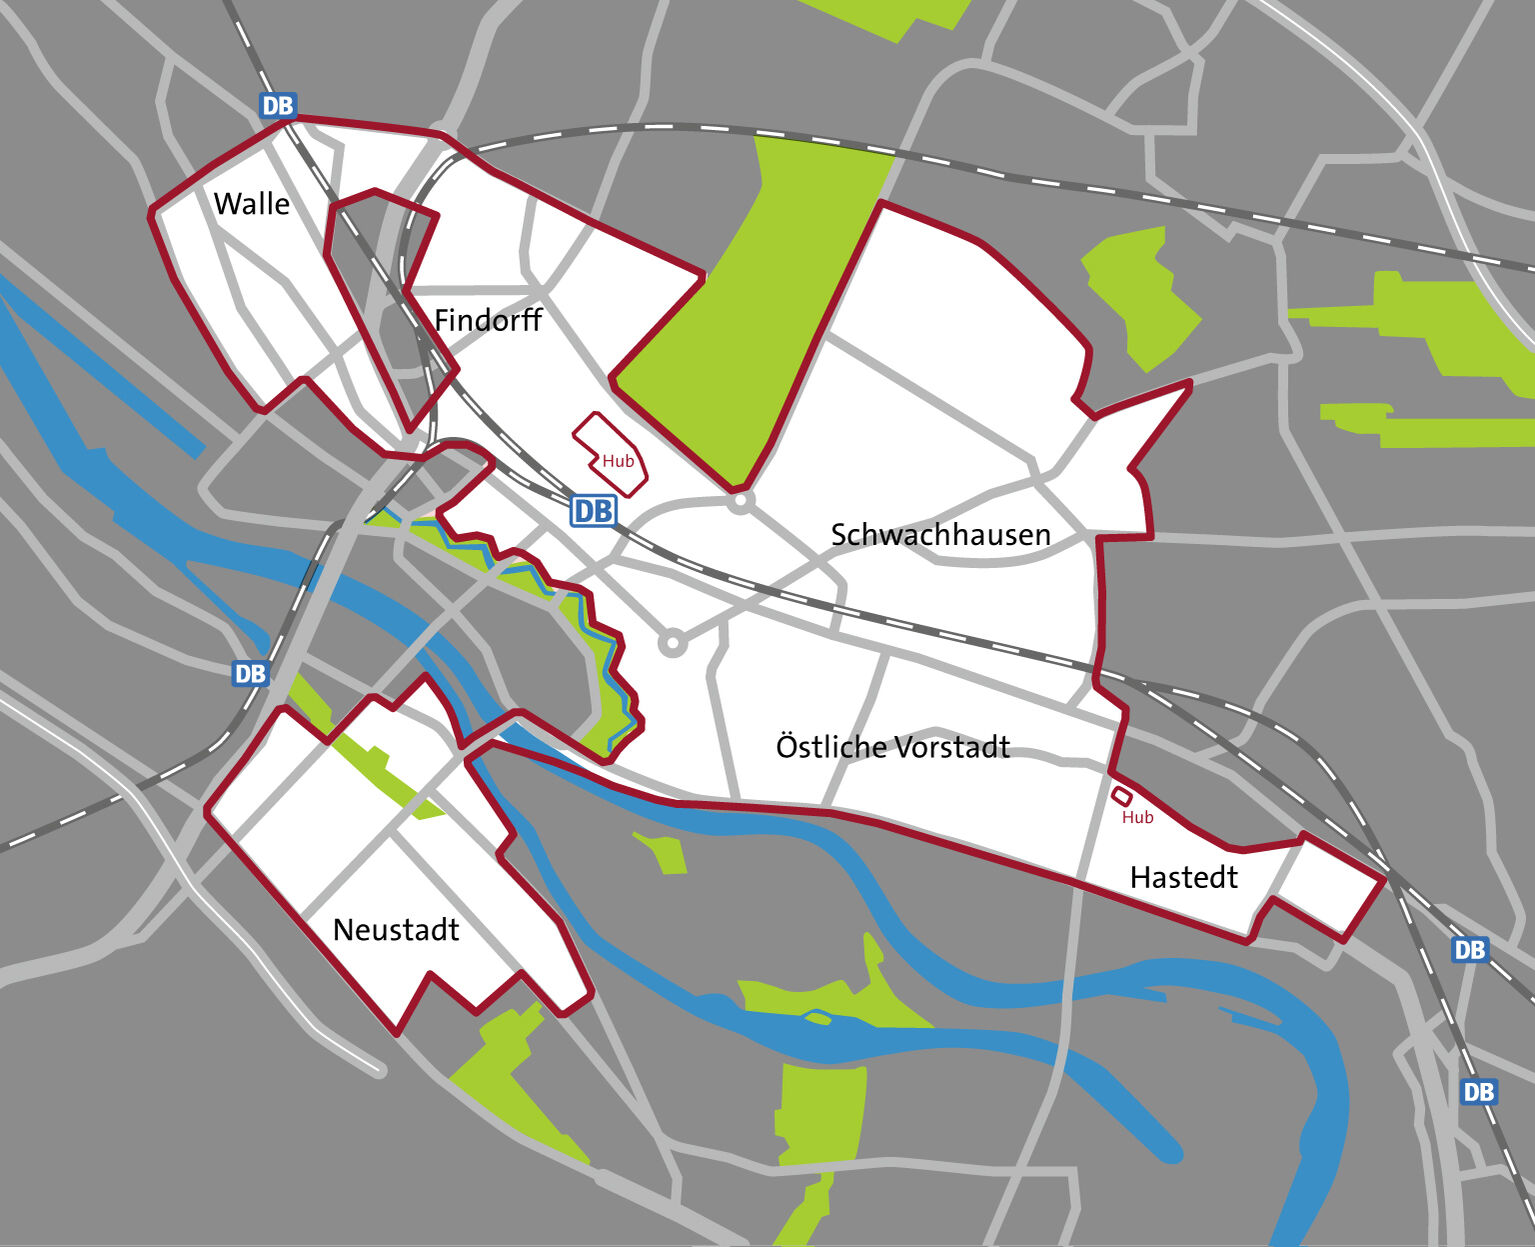 Karte des Bereiches in dem smumo, der Free-Floating-Dienst von cambio CarSharing, in Bremen abgestellt werden darf.  